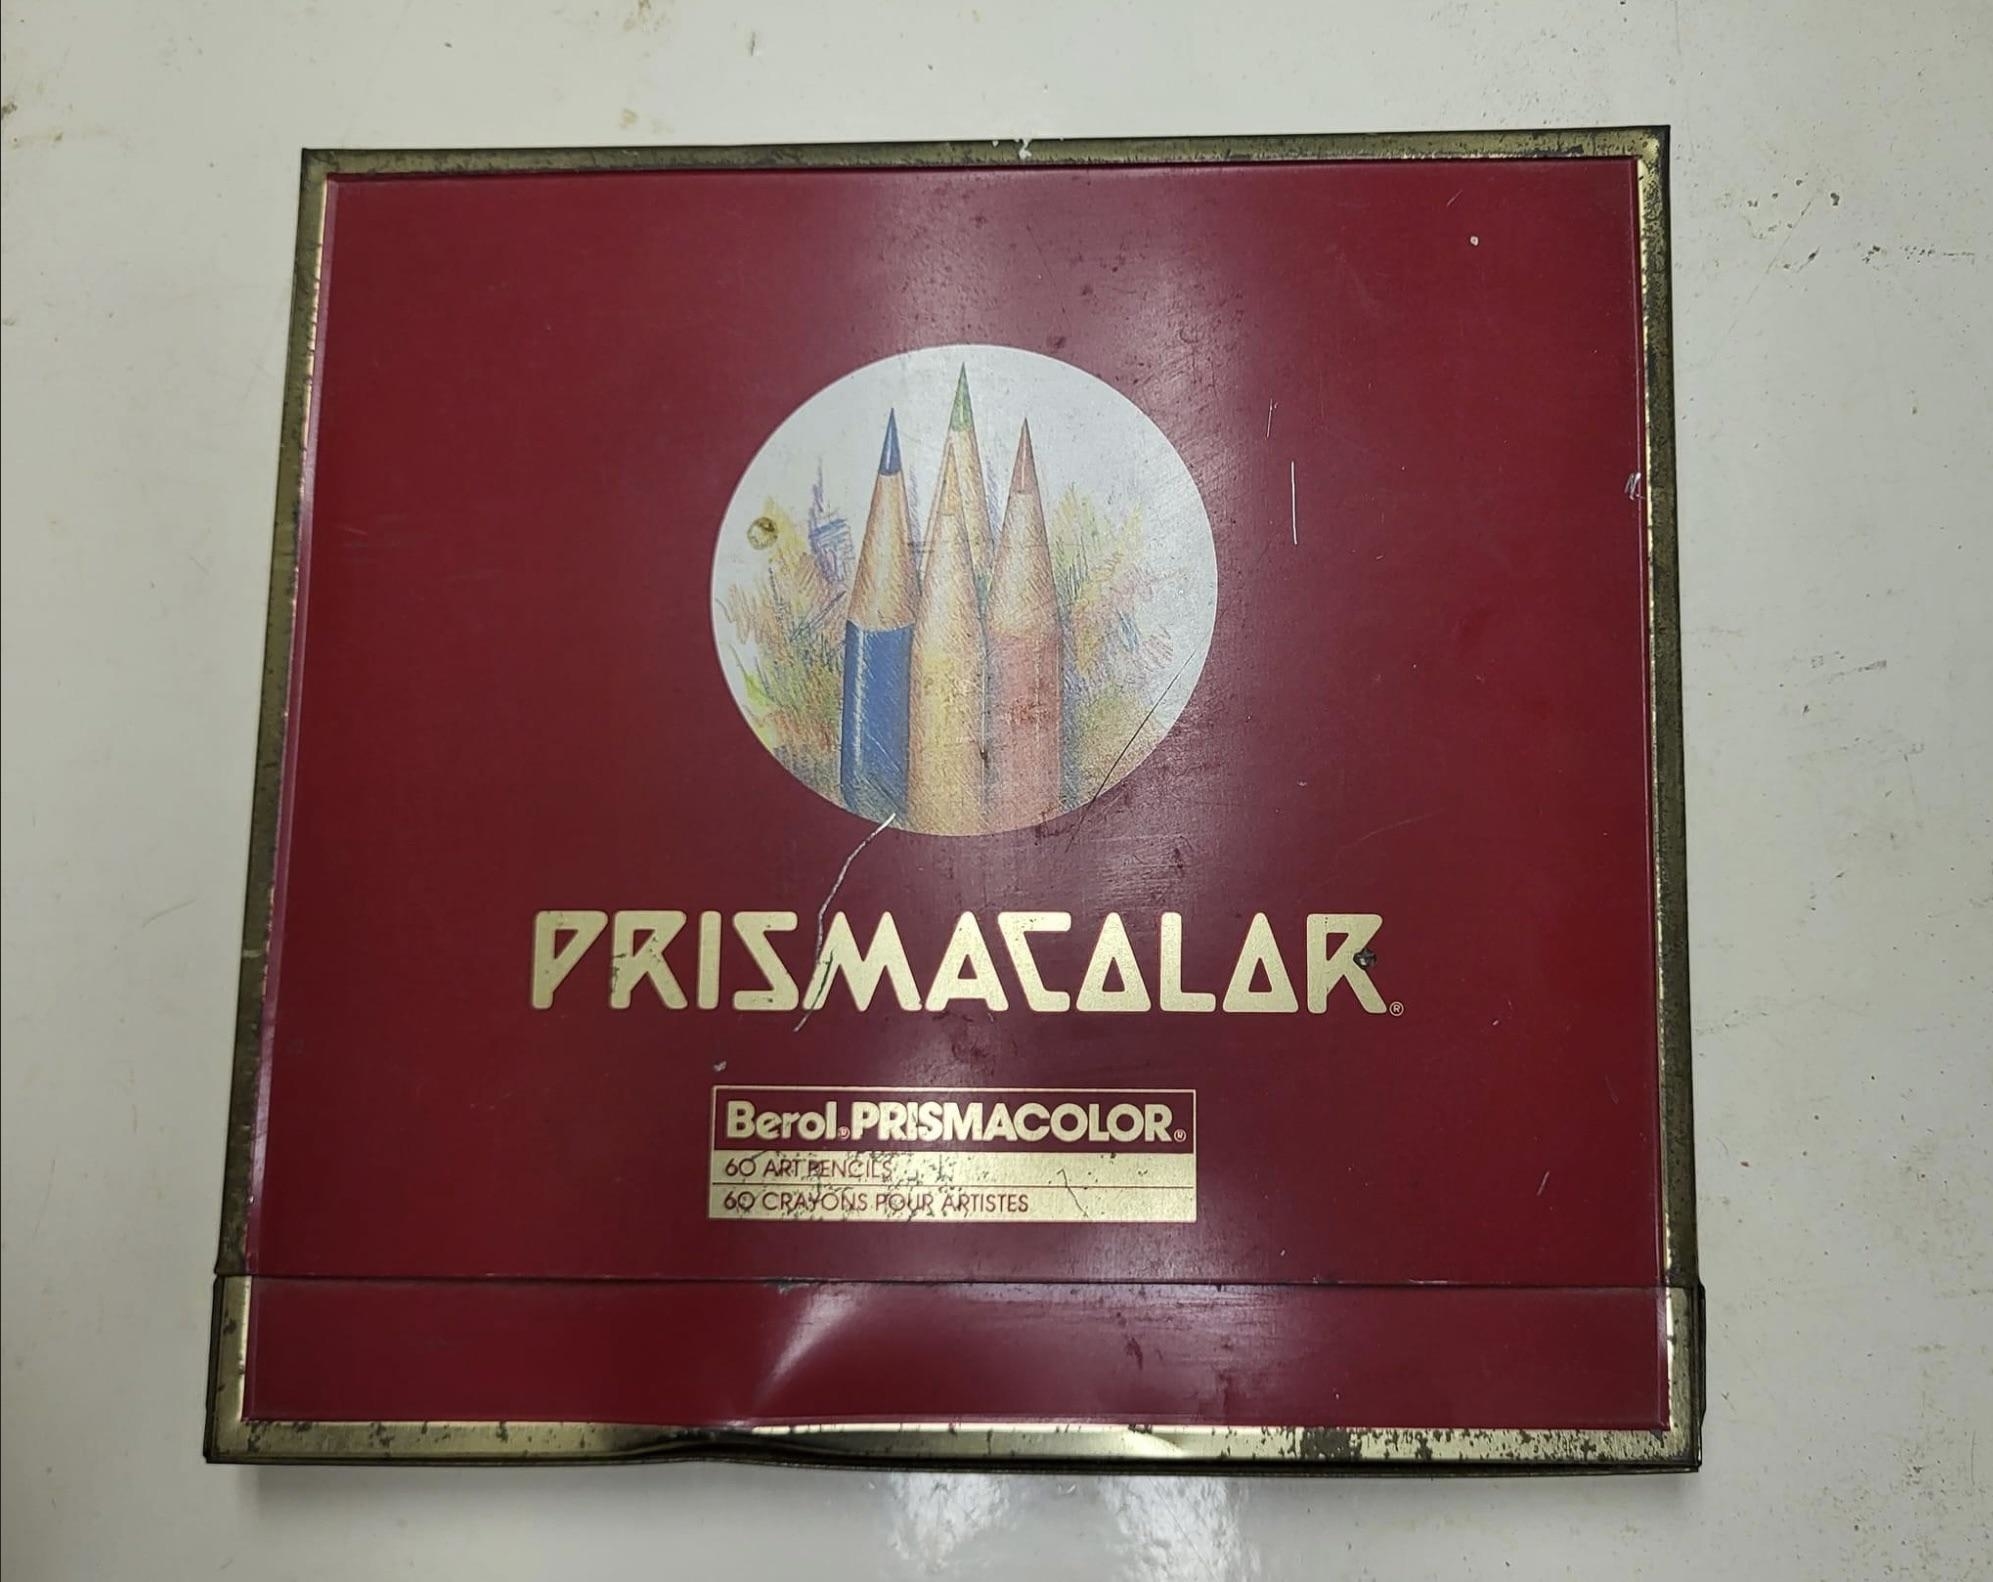 Prismacolor pencils